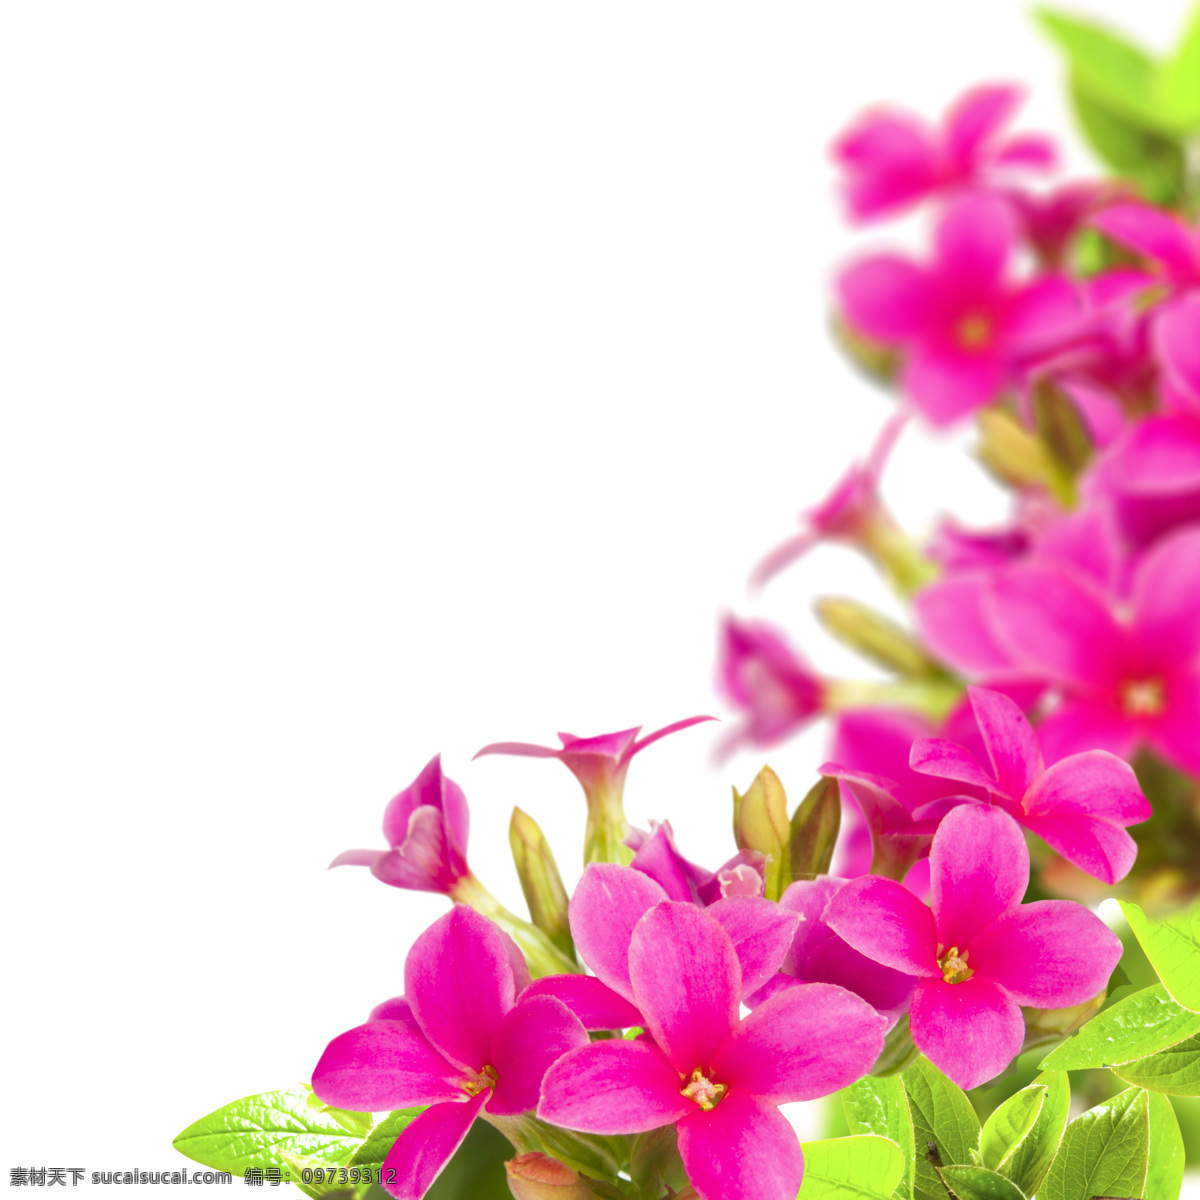 紫红色 小花 边框 背景 紫红色花朵 浪漫背景 温馨背景 鲜花背景 花朵 花卉 美丽鲜花 梦幻背景 花草树木 生物世界